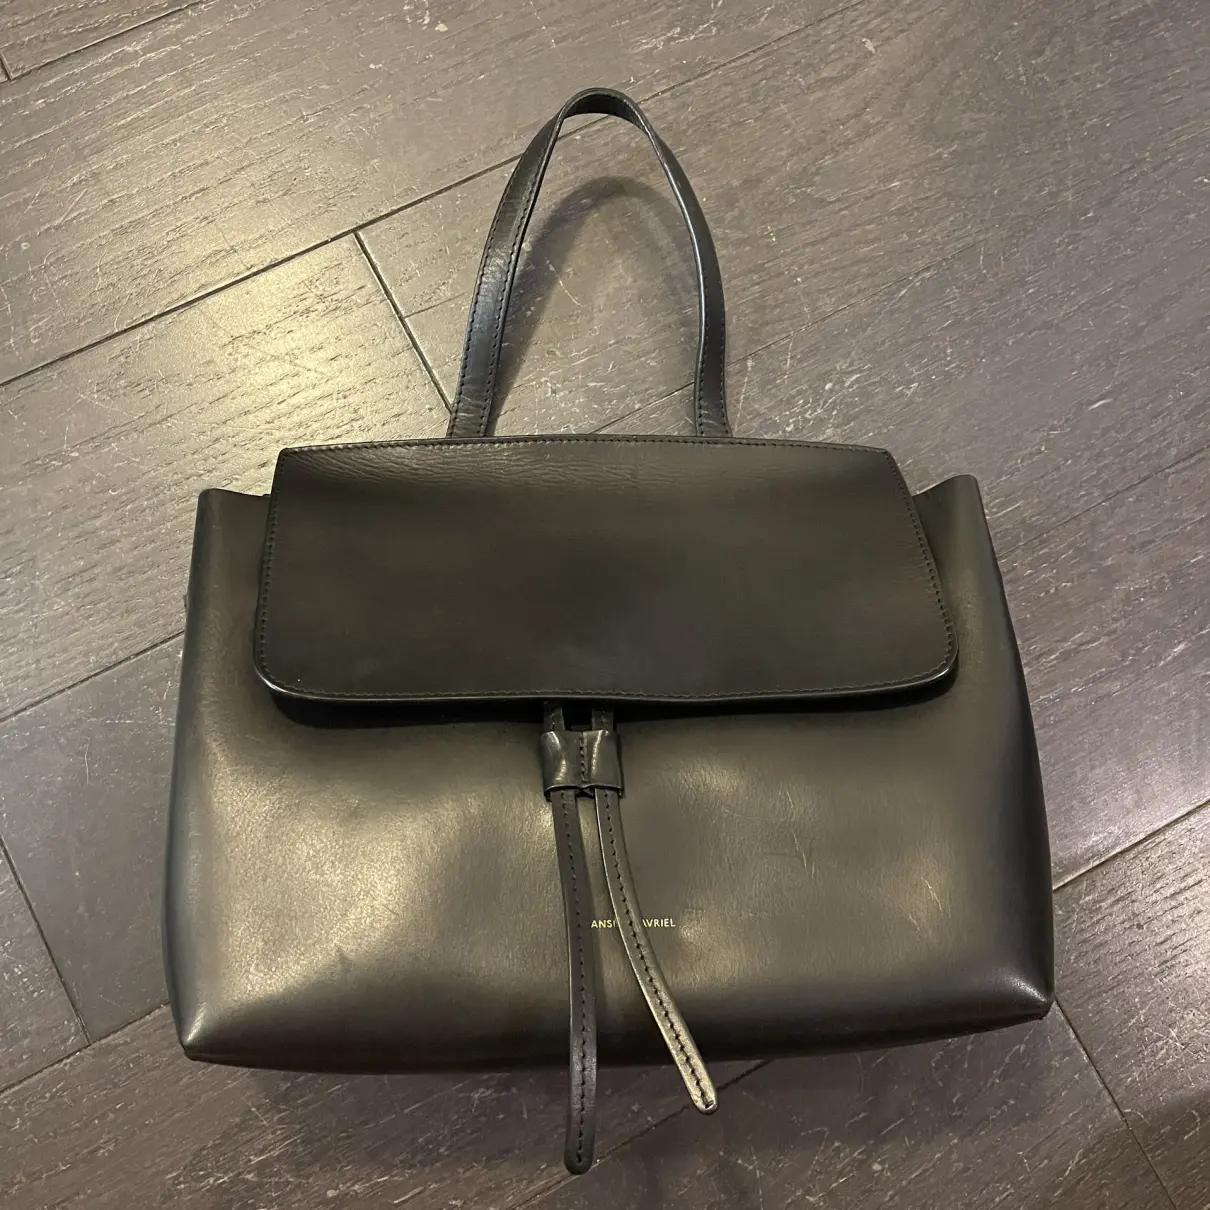 Buy Mansur Gavriel Lady leather handbag online